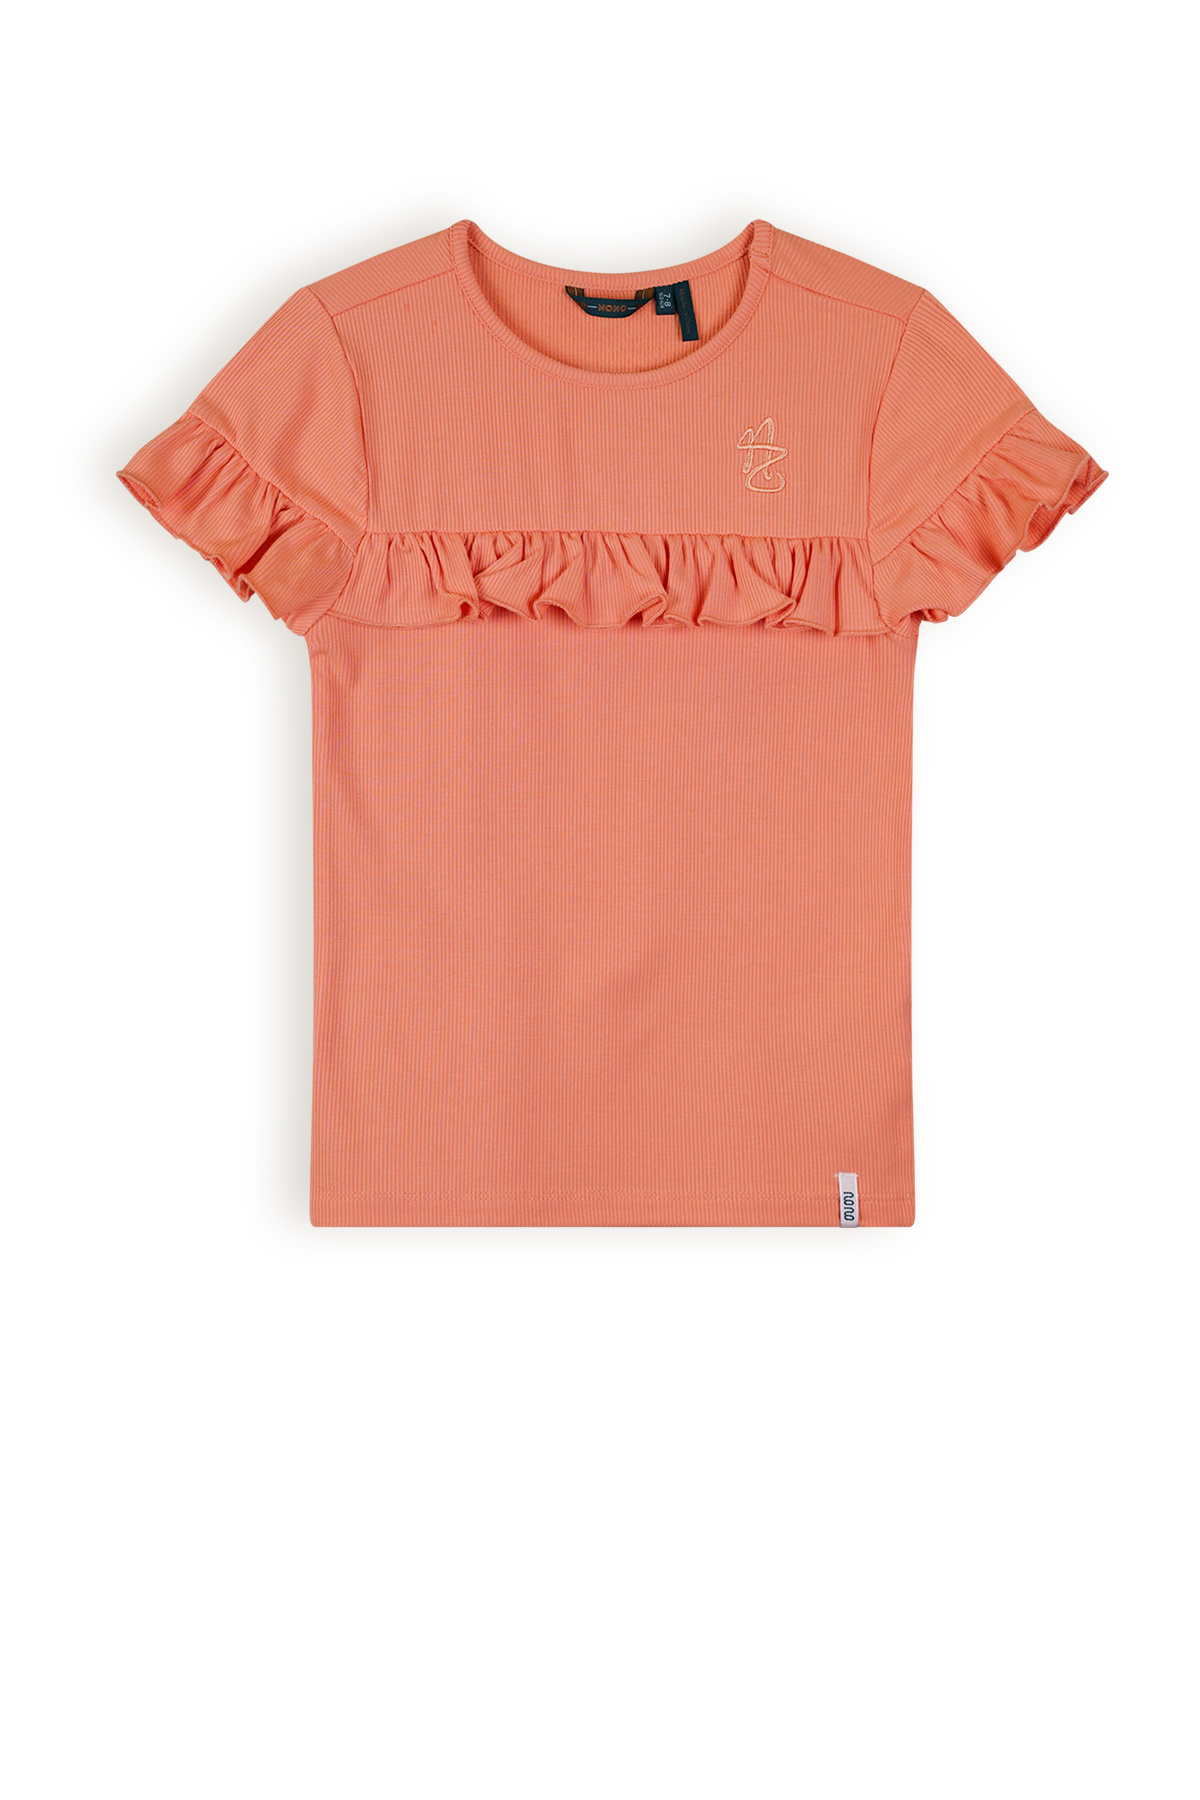 NoNo Meisjes t-shirt rib met ruffel - Kovan - Lobster rood